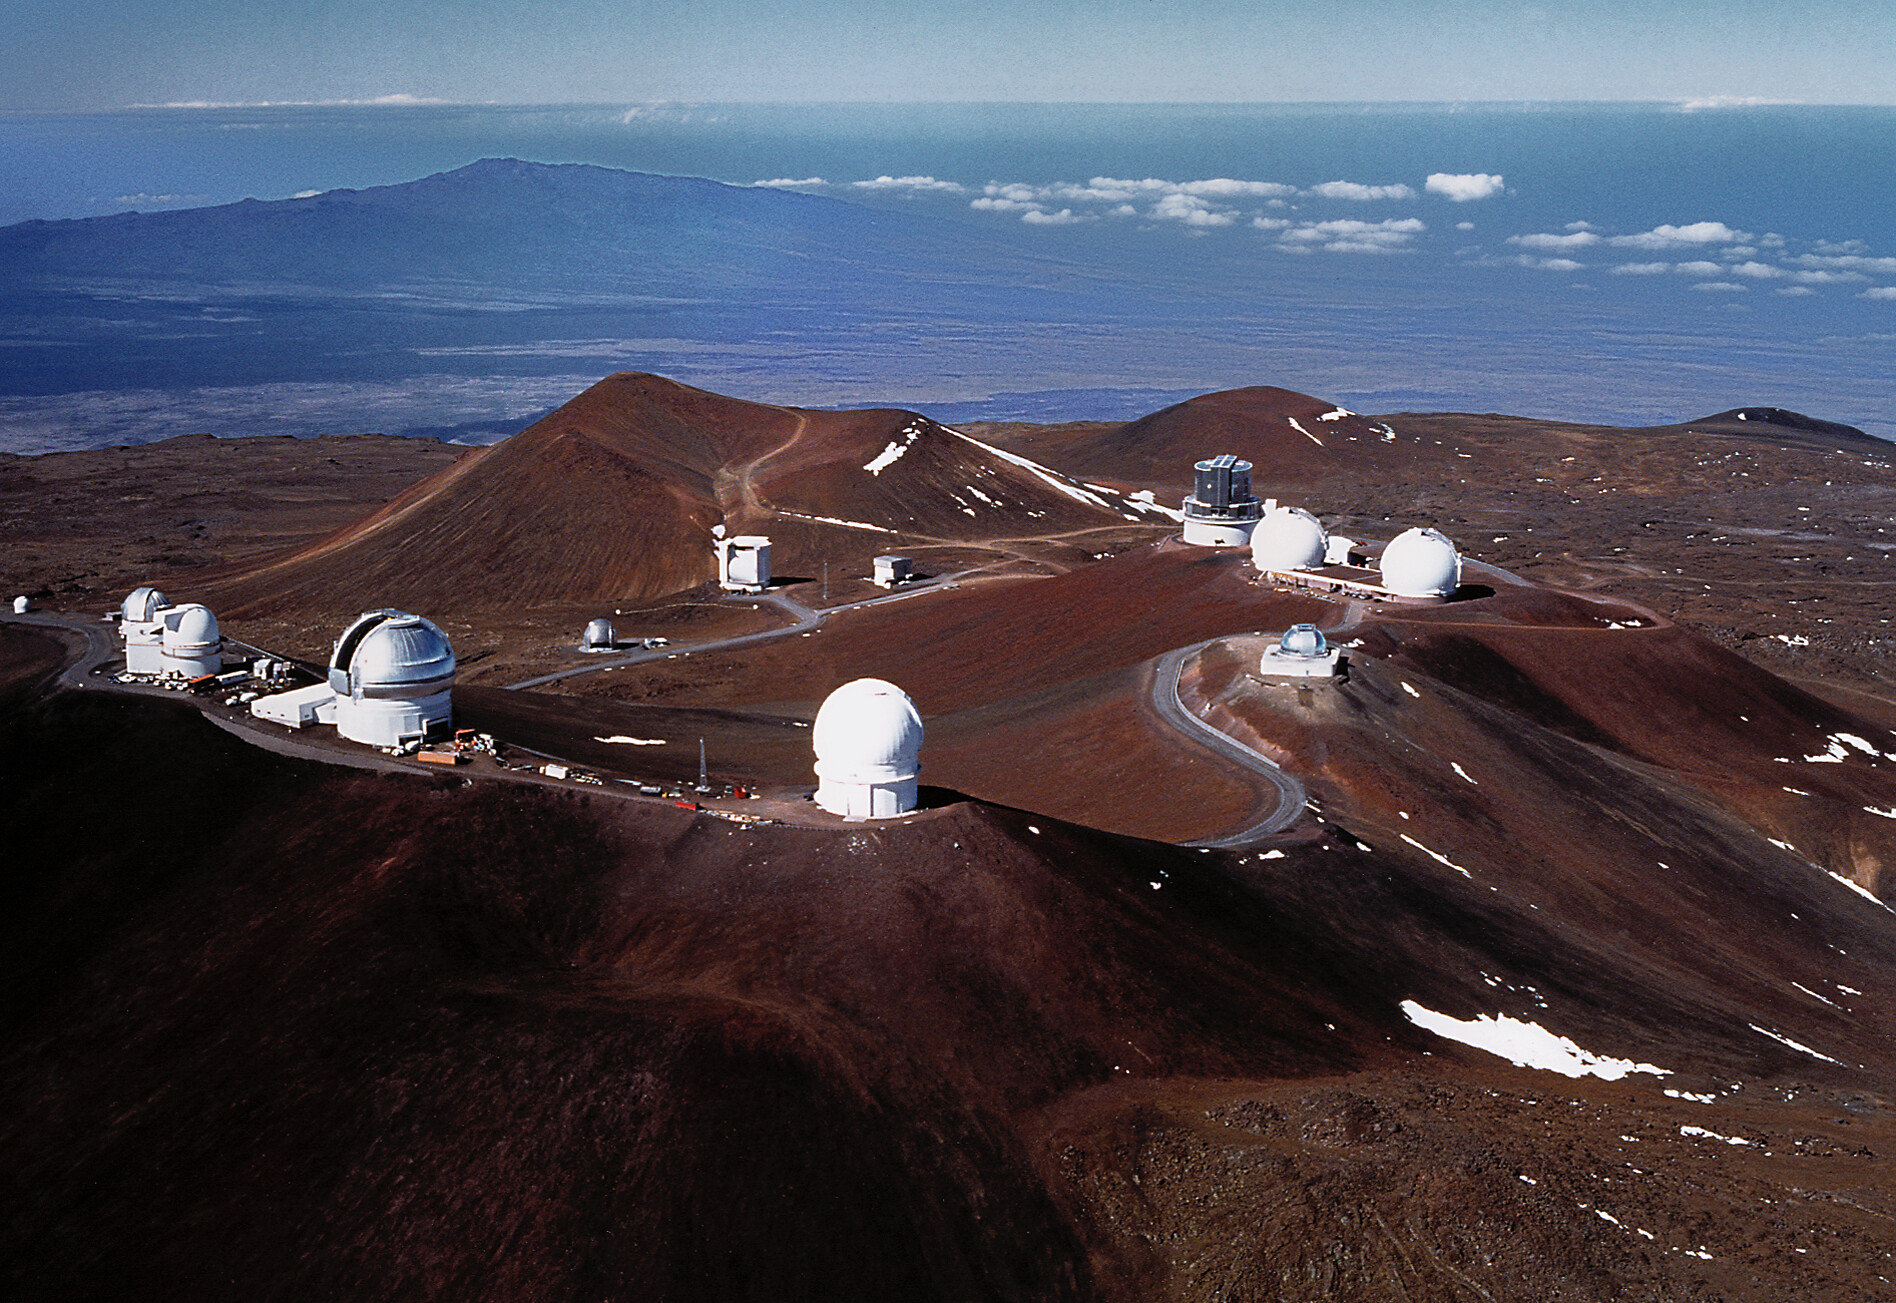 Mauna Kea with Gemini North